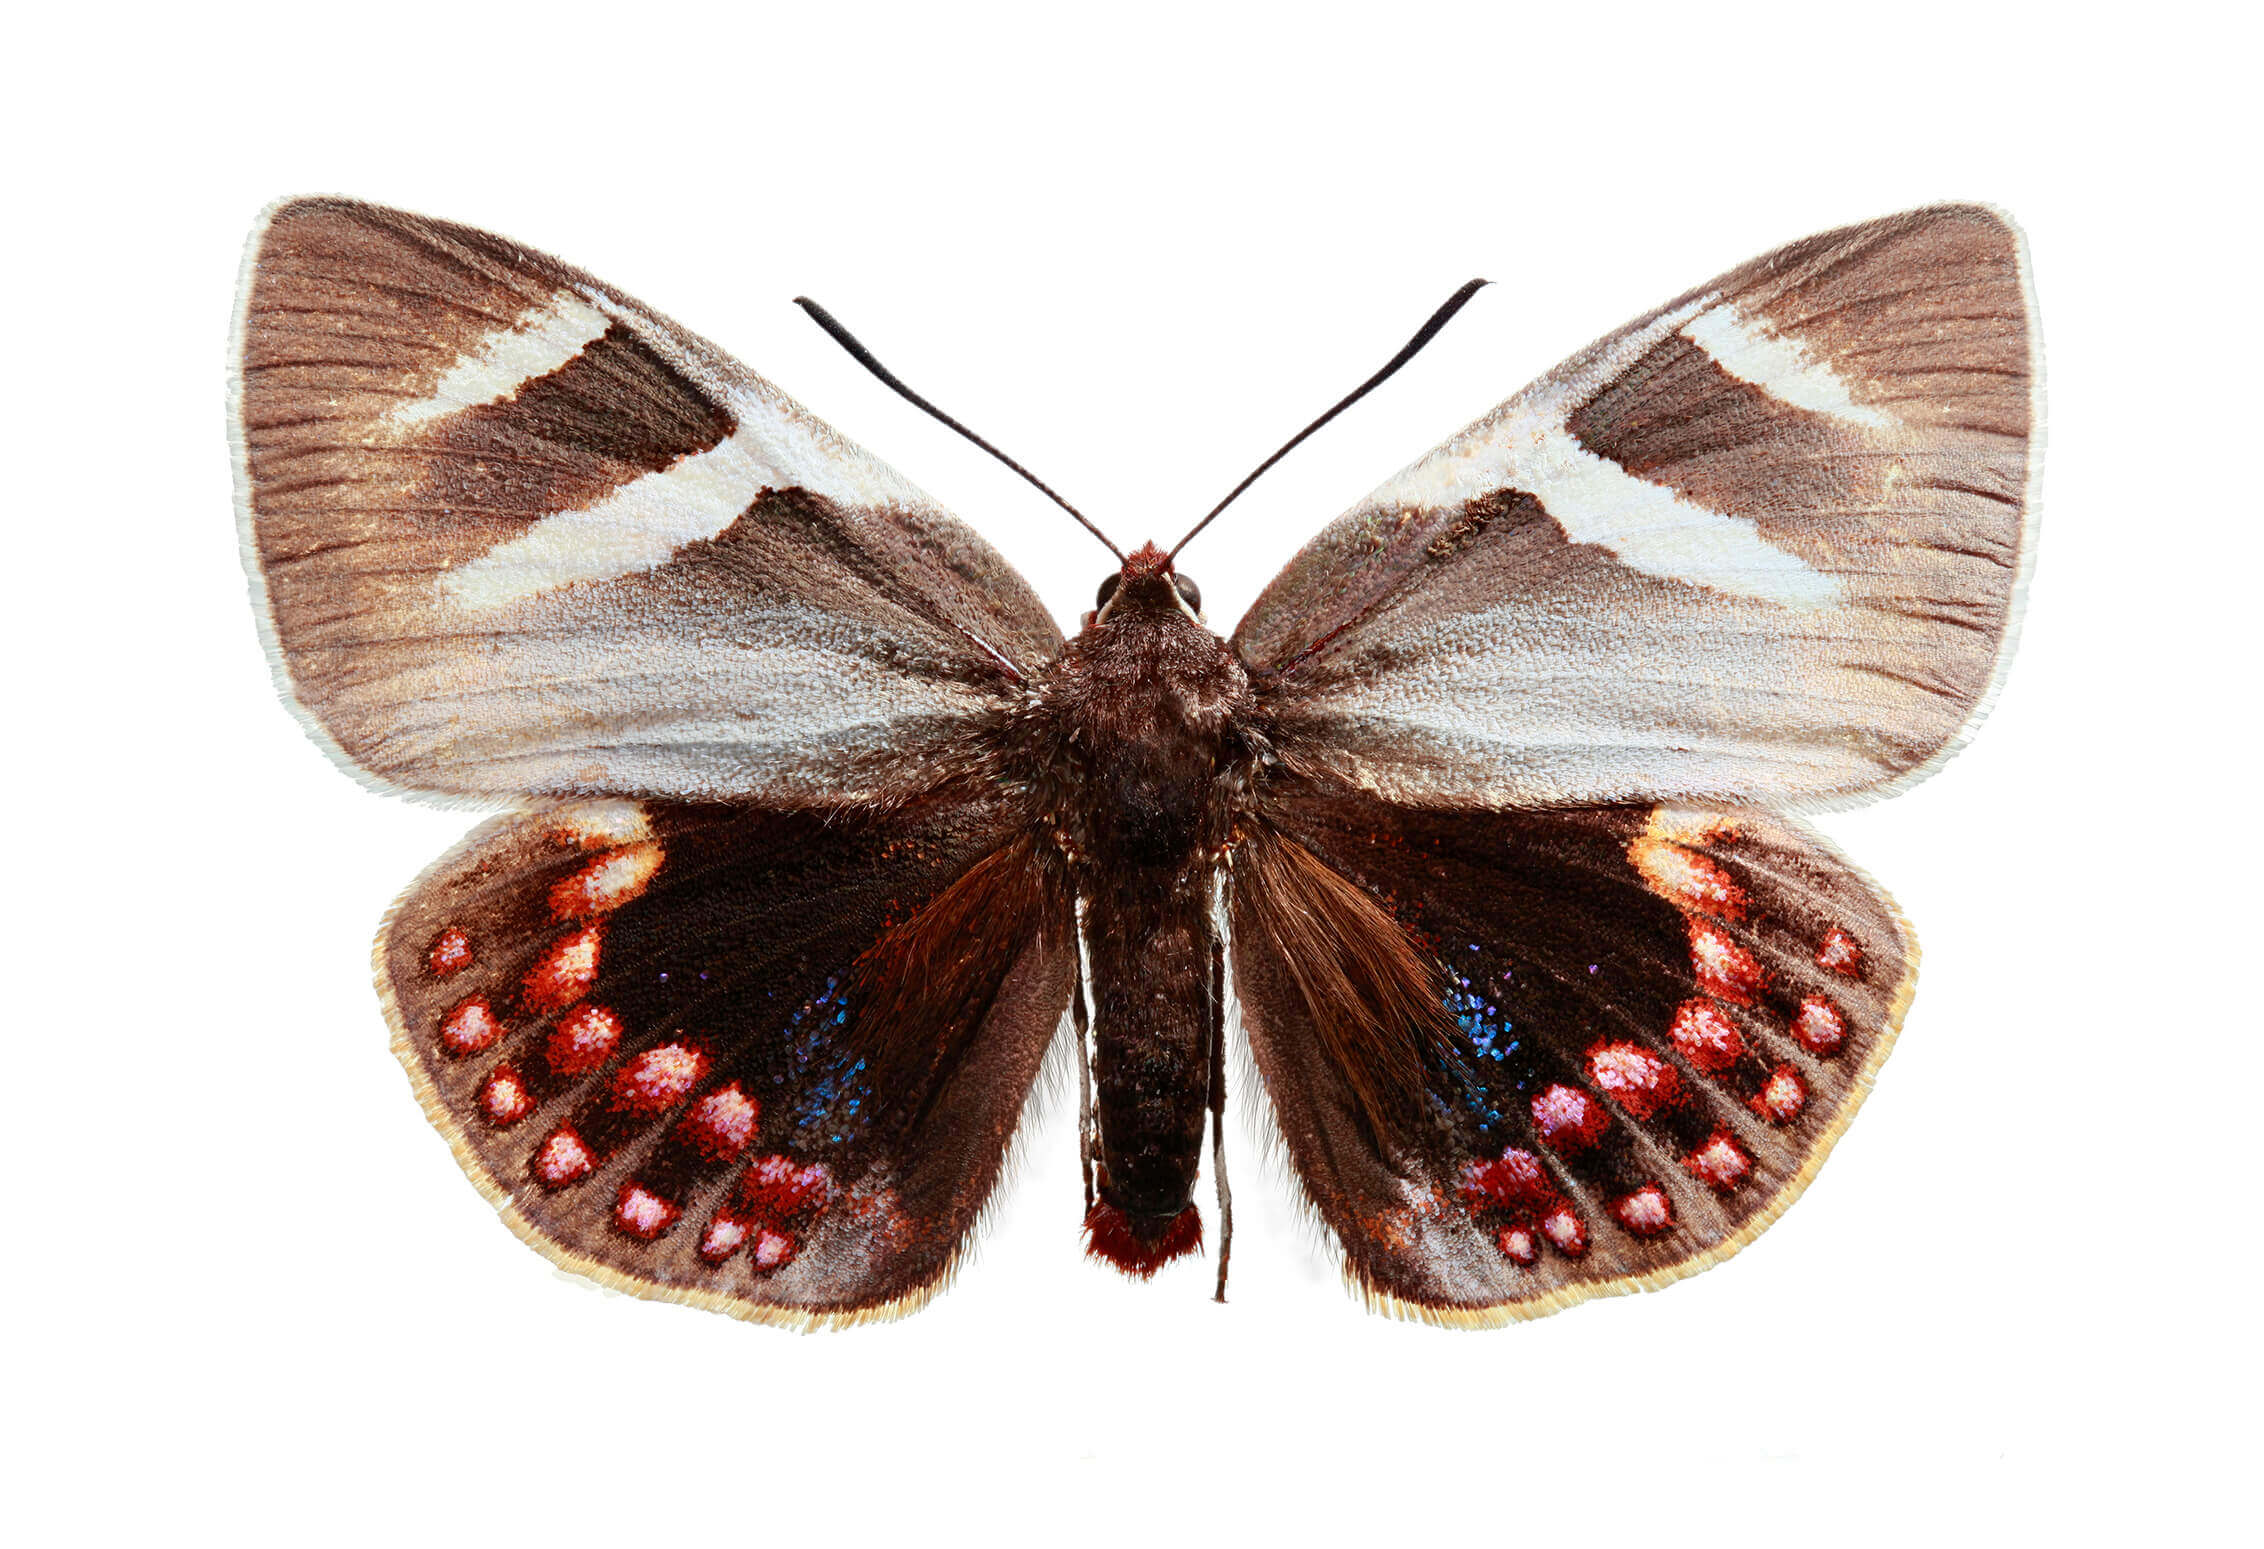 La mariposa del chagual (Castina psittacus) es conocida también como mariposa papagayo debido a la diversidad de colores de sus escamas. Es una especie endémica de Chile y está íntimamente relacionada al chagual (puya sp.), plantas en las que se reproducen. Las hembras no vuelan.